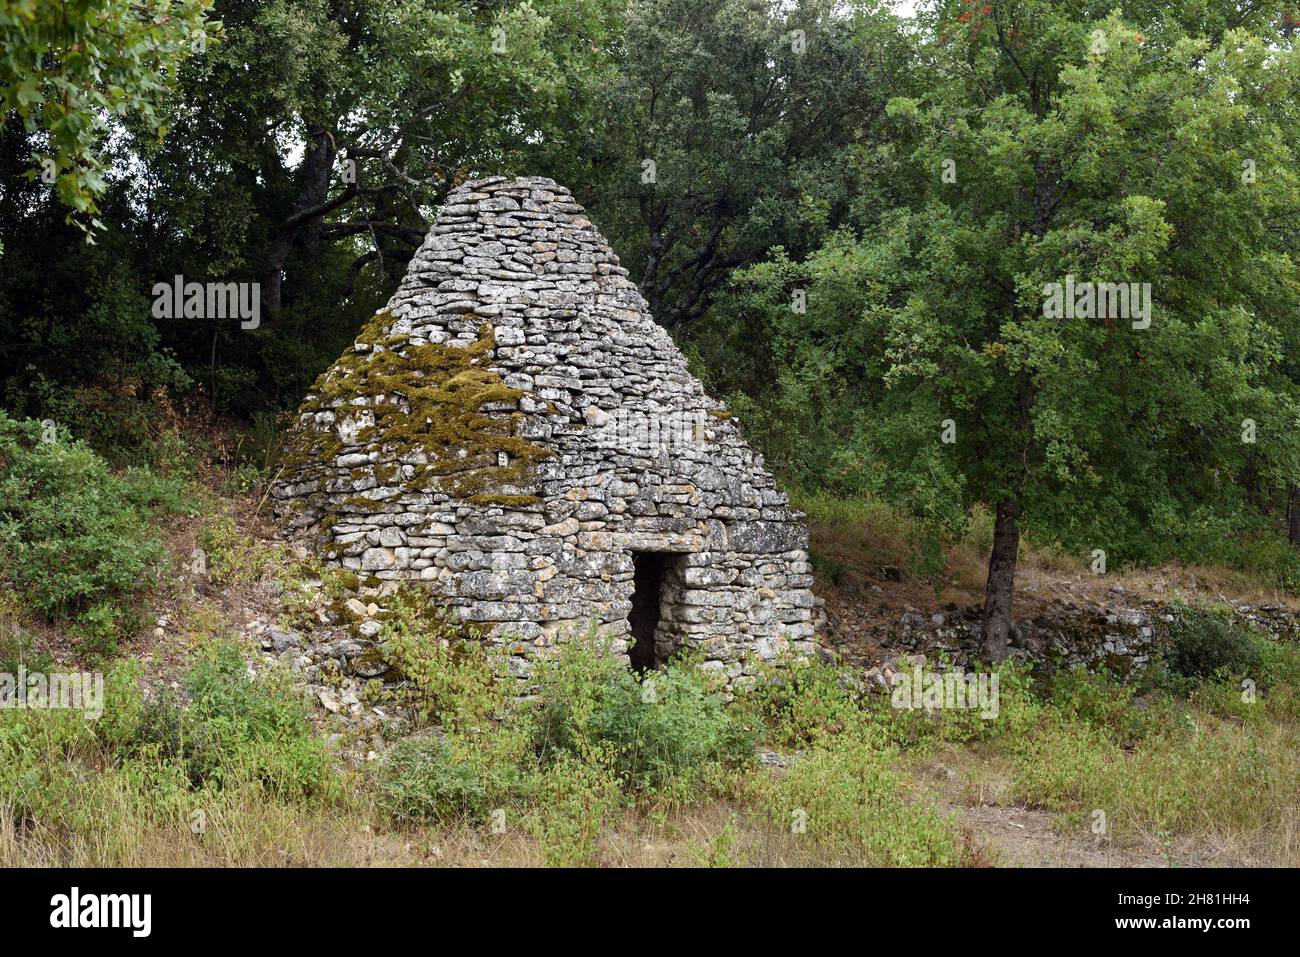 Cabane traditionnelle en pierre sèche connue sous le nom de Borie dans le Parc régional du Luberon Vaucluse Provence France Banque D'Images